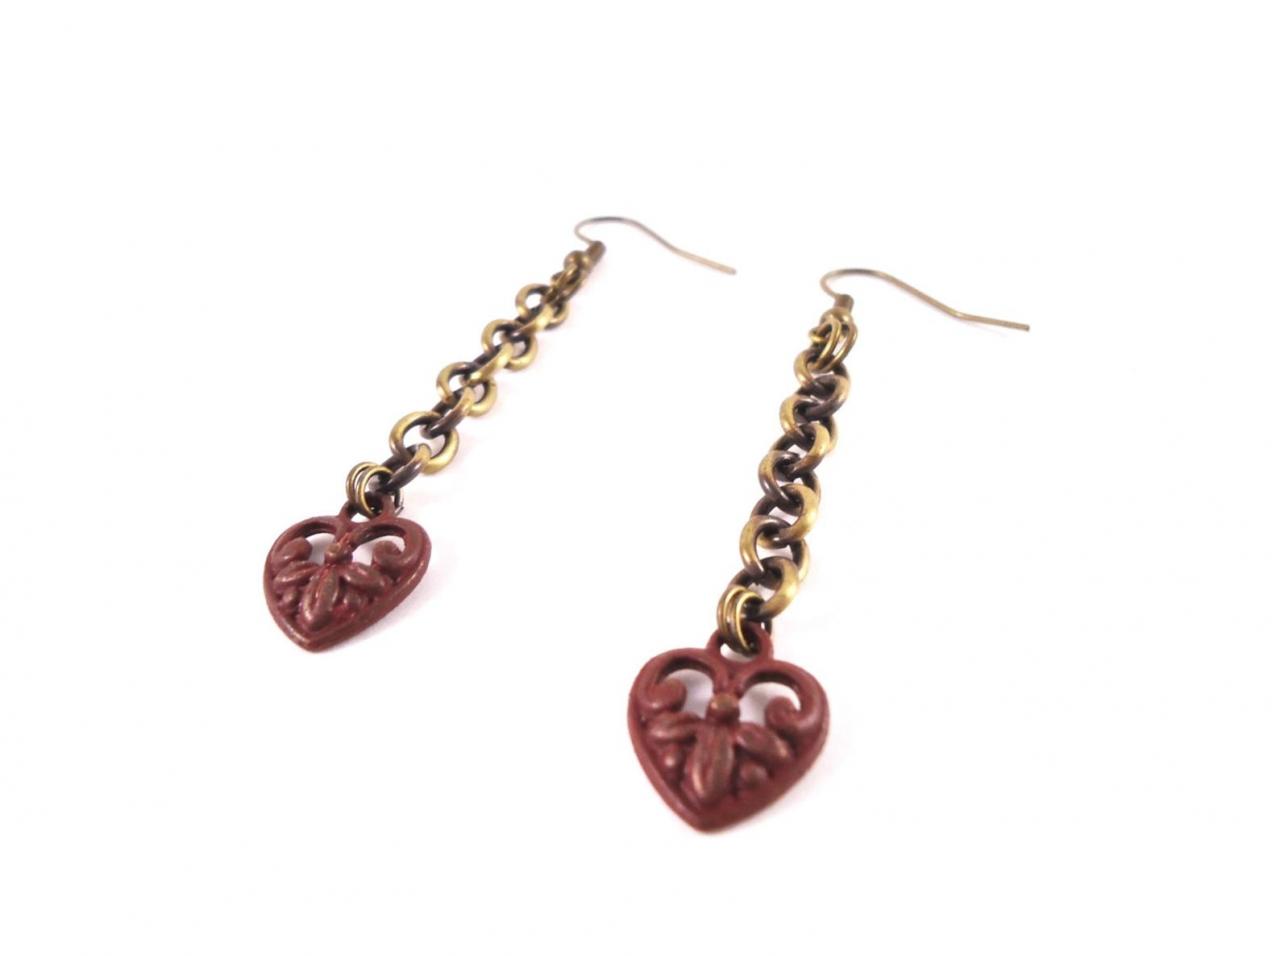 Romantic Earrings Gift For Her - Drop Earrings - Boho Jewelry - Boho Earrings - Minimalist Earrings - Red Long Earrings - Statement Earrings